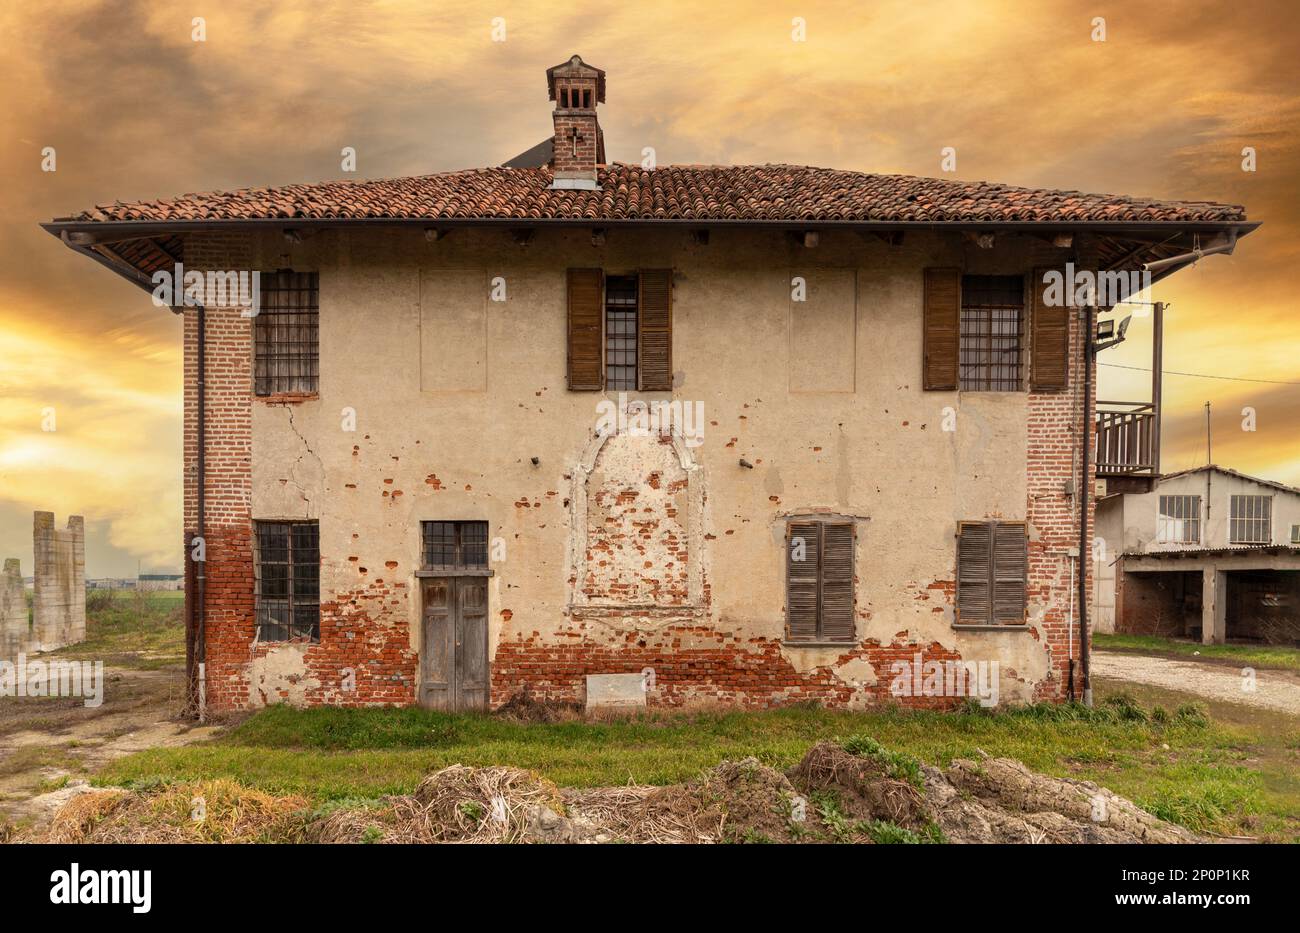 Ancienne ferme abandonnée à l'architecture rurale typique de la vallée du po dans la province de Cuneo, en Italie Banque D'Images